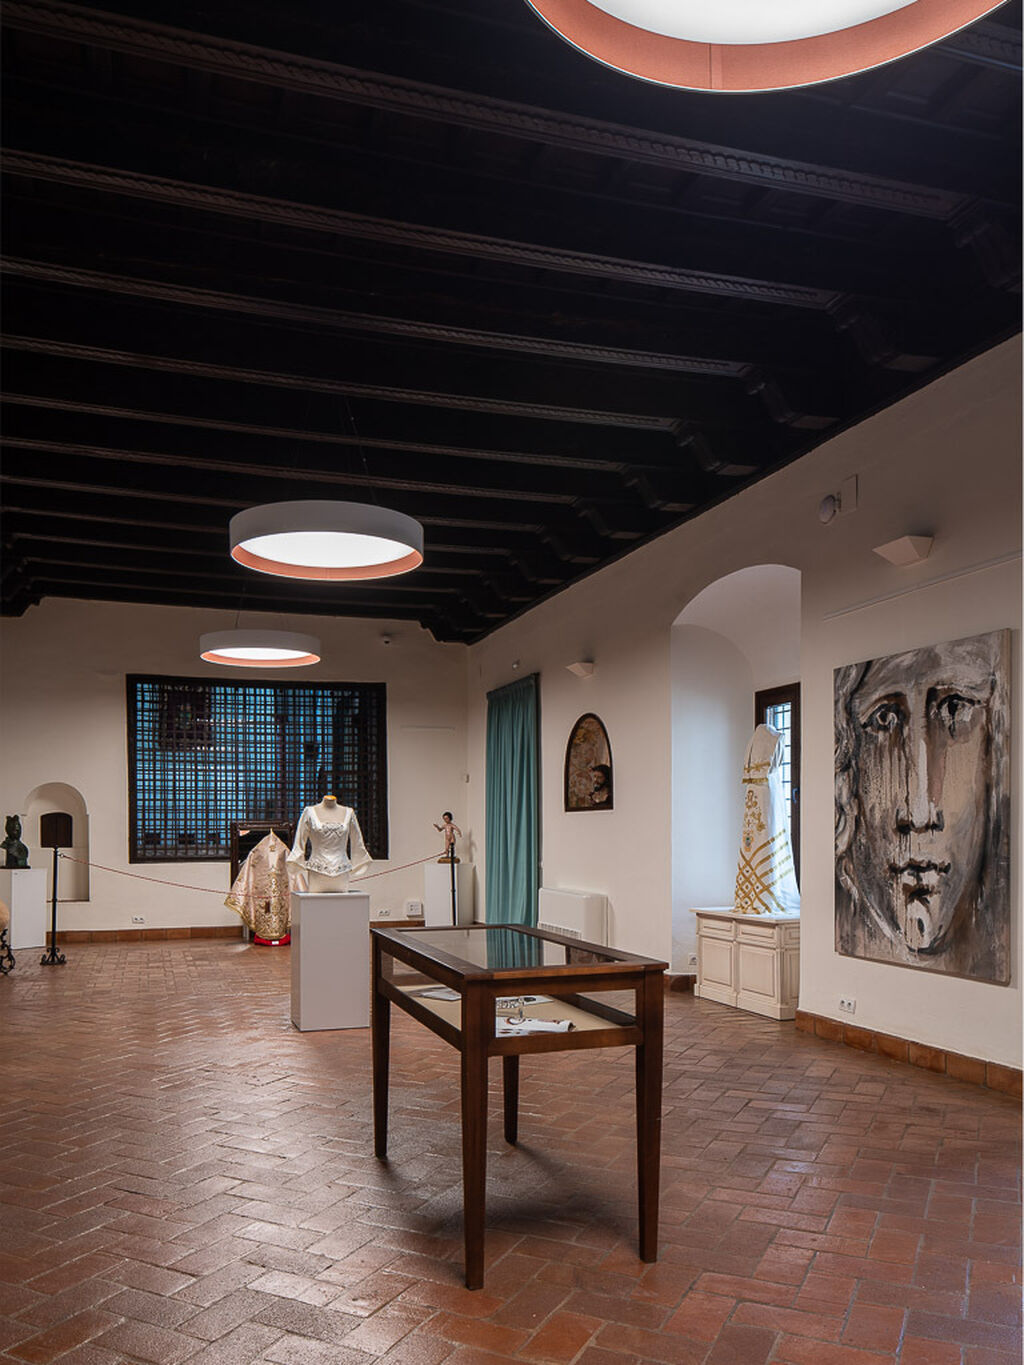 La inauguraci&oacute;n del Museo Victorio &amp; Lucchino en Palma del R&iacute;o, en im&aacute;genes